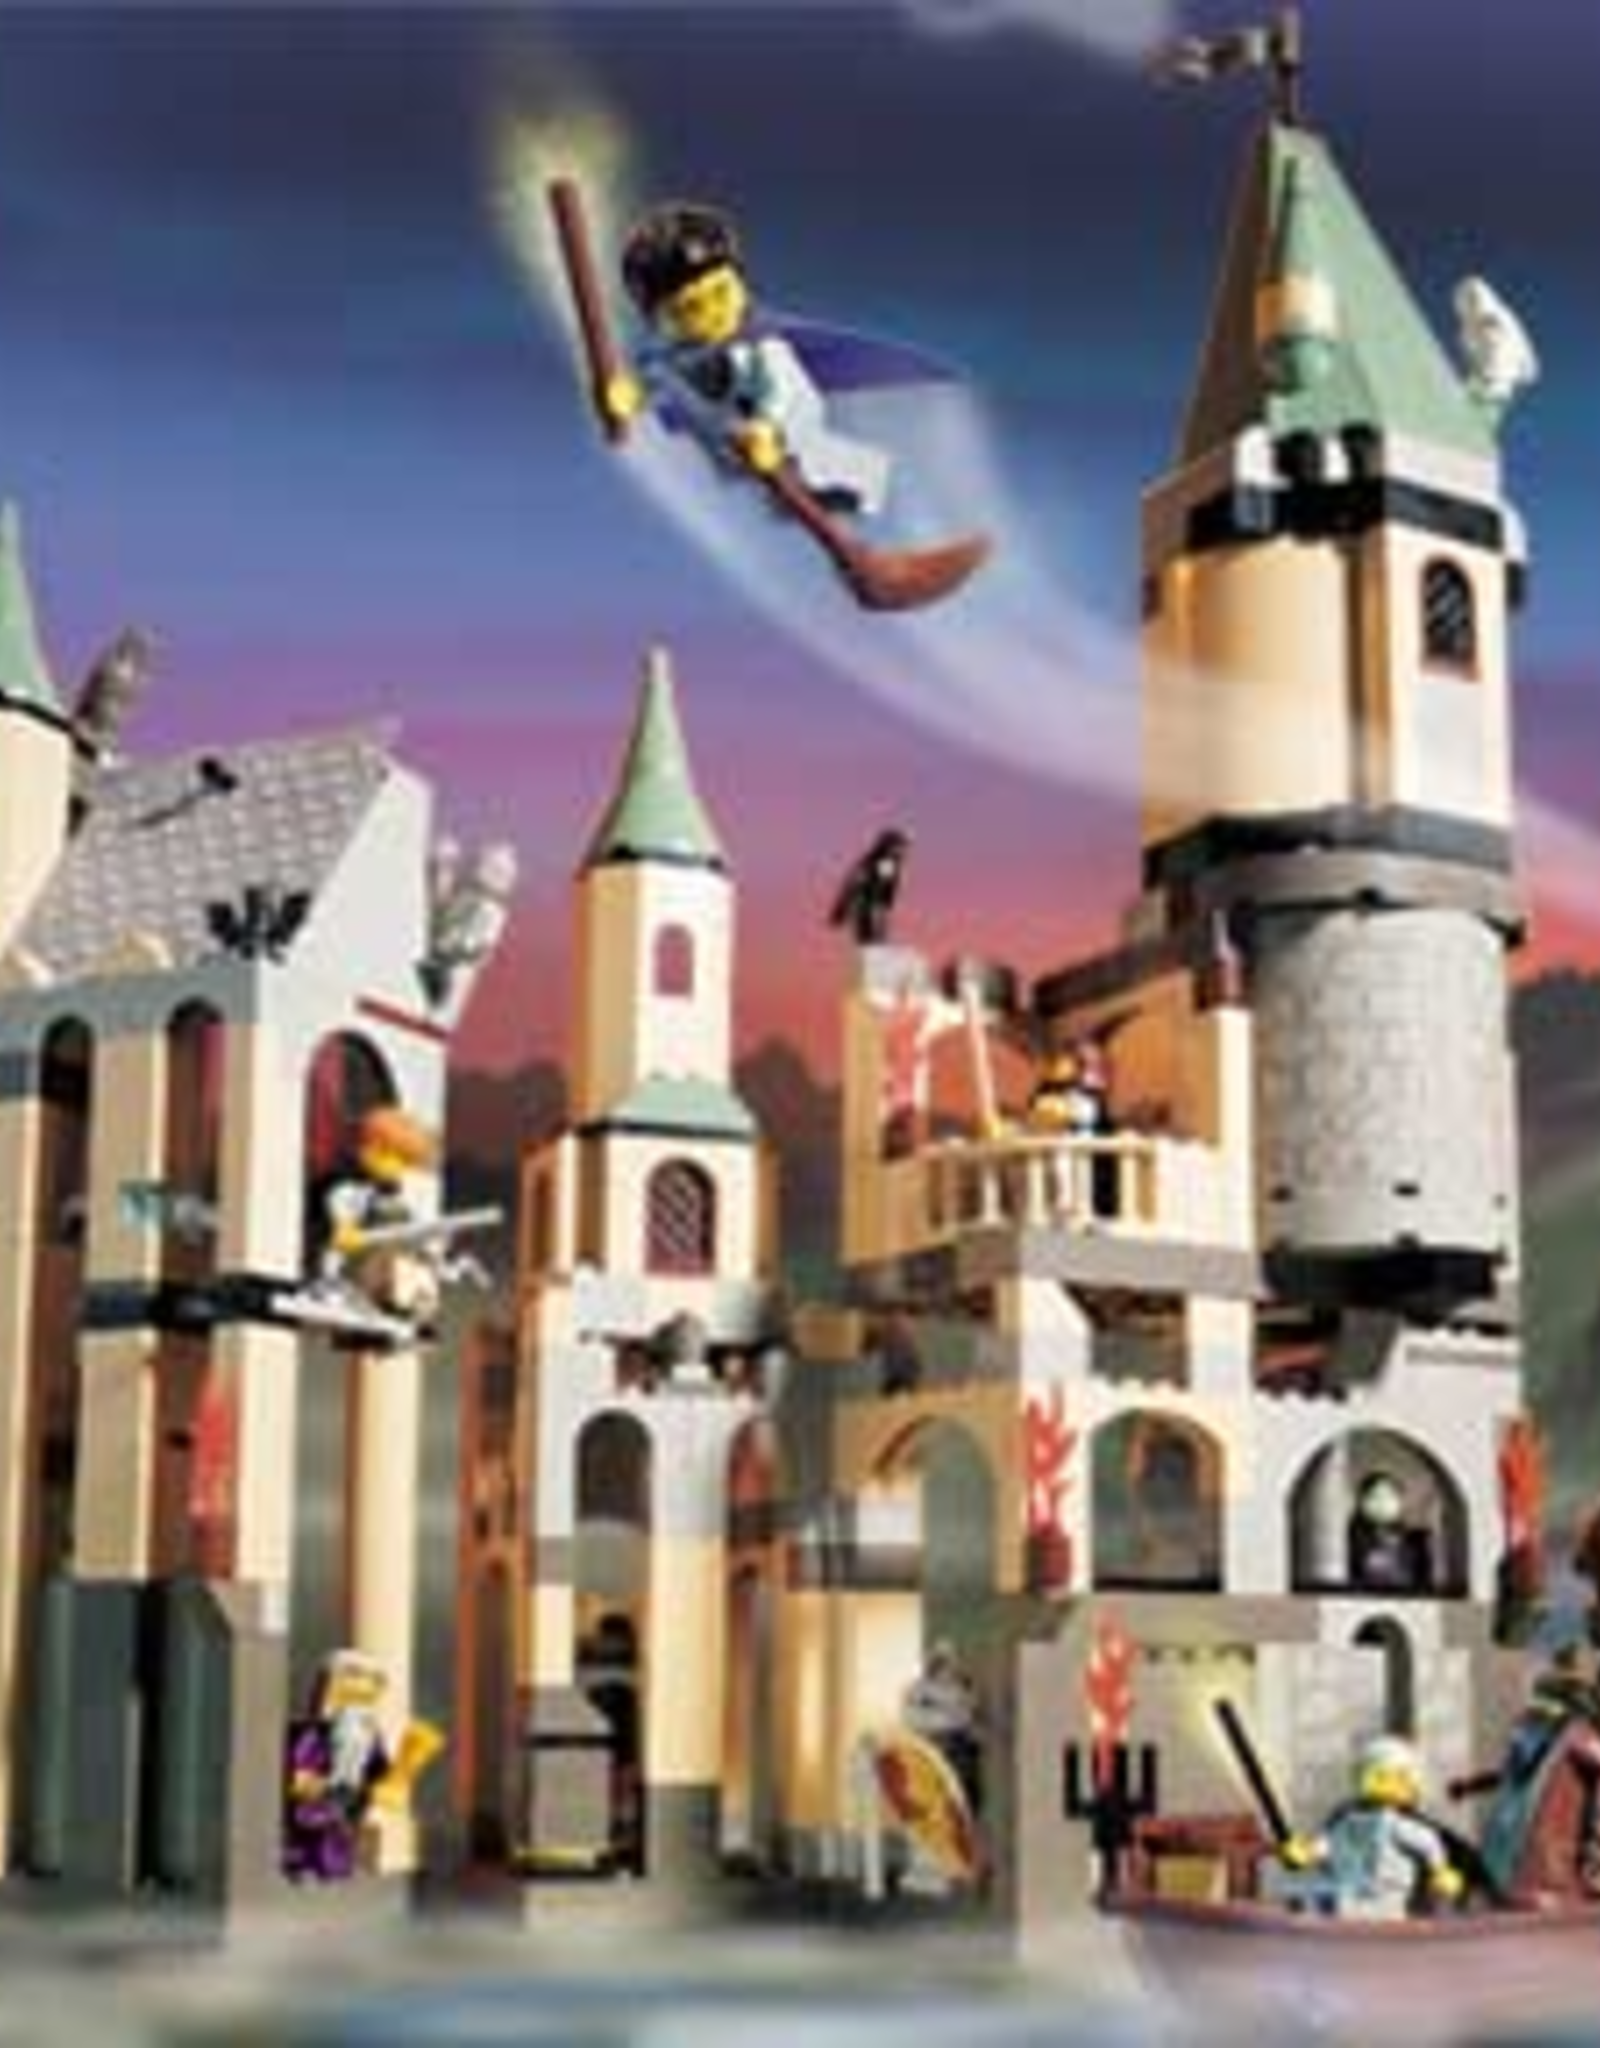 LEGO LEGO 4709 Hogwarts Castle HARRY POTTER